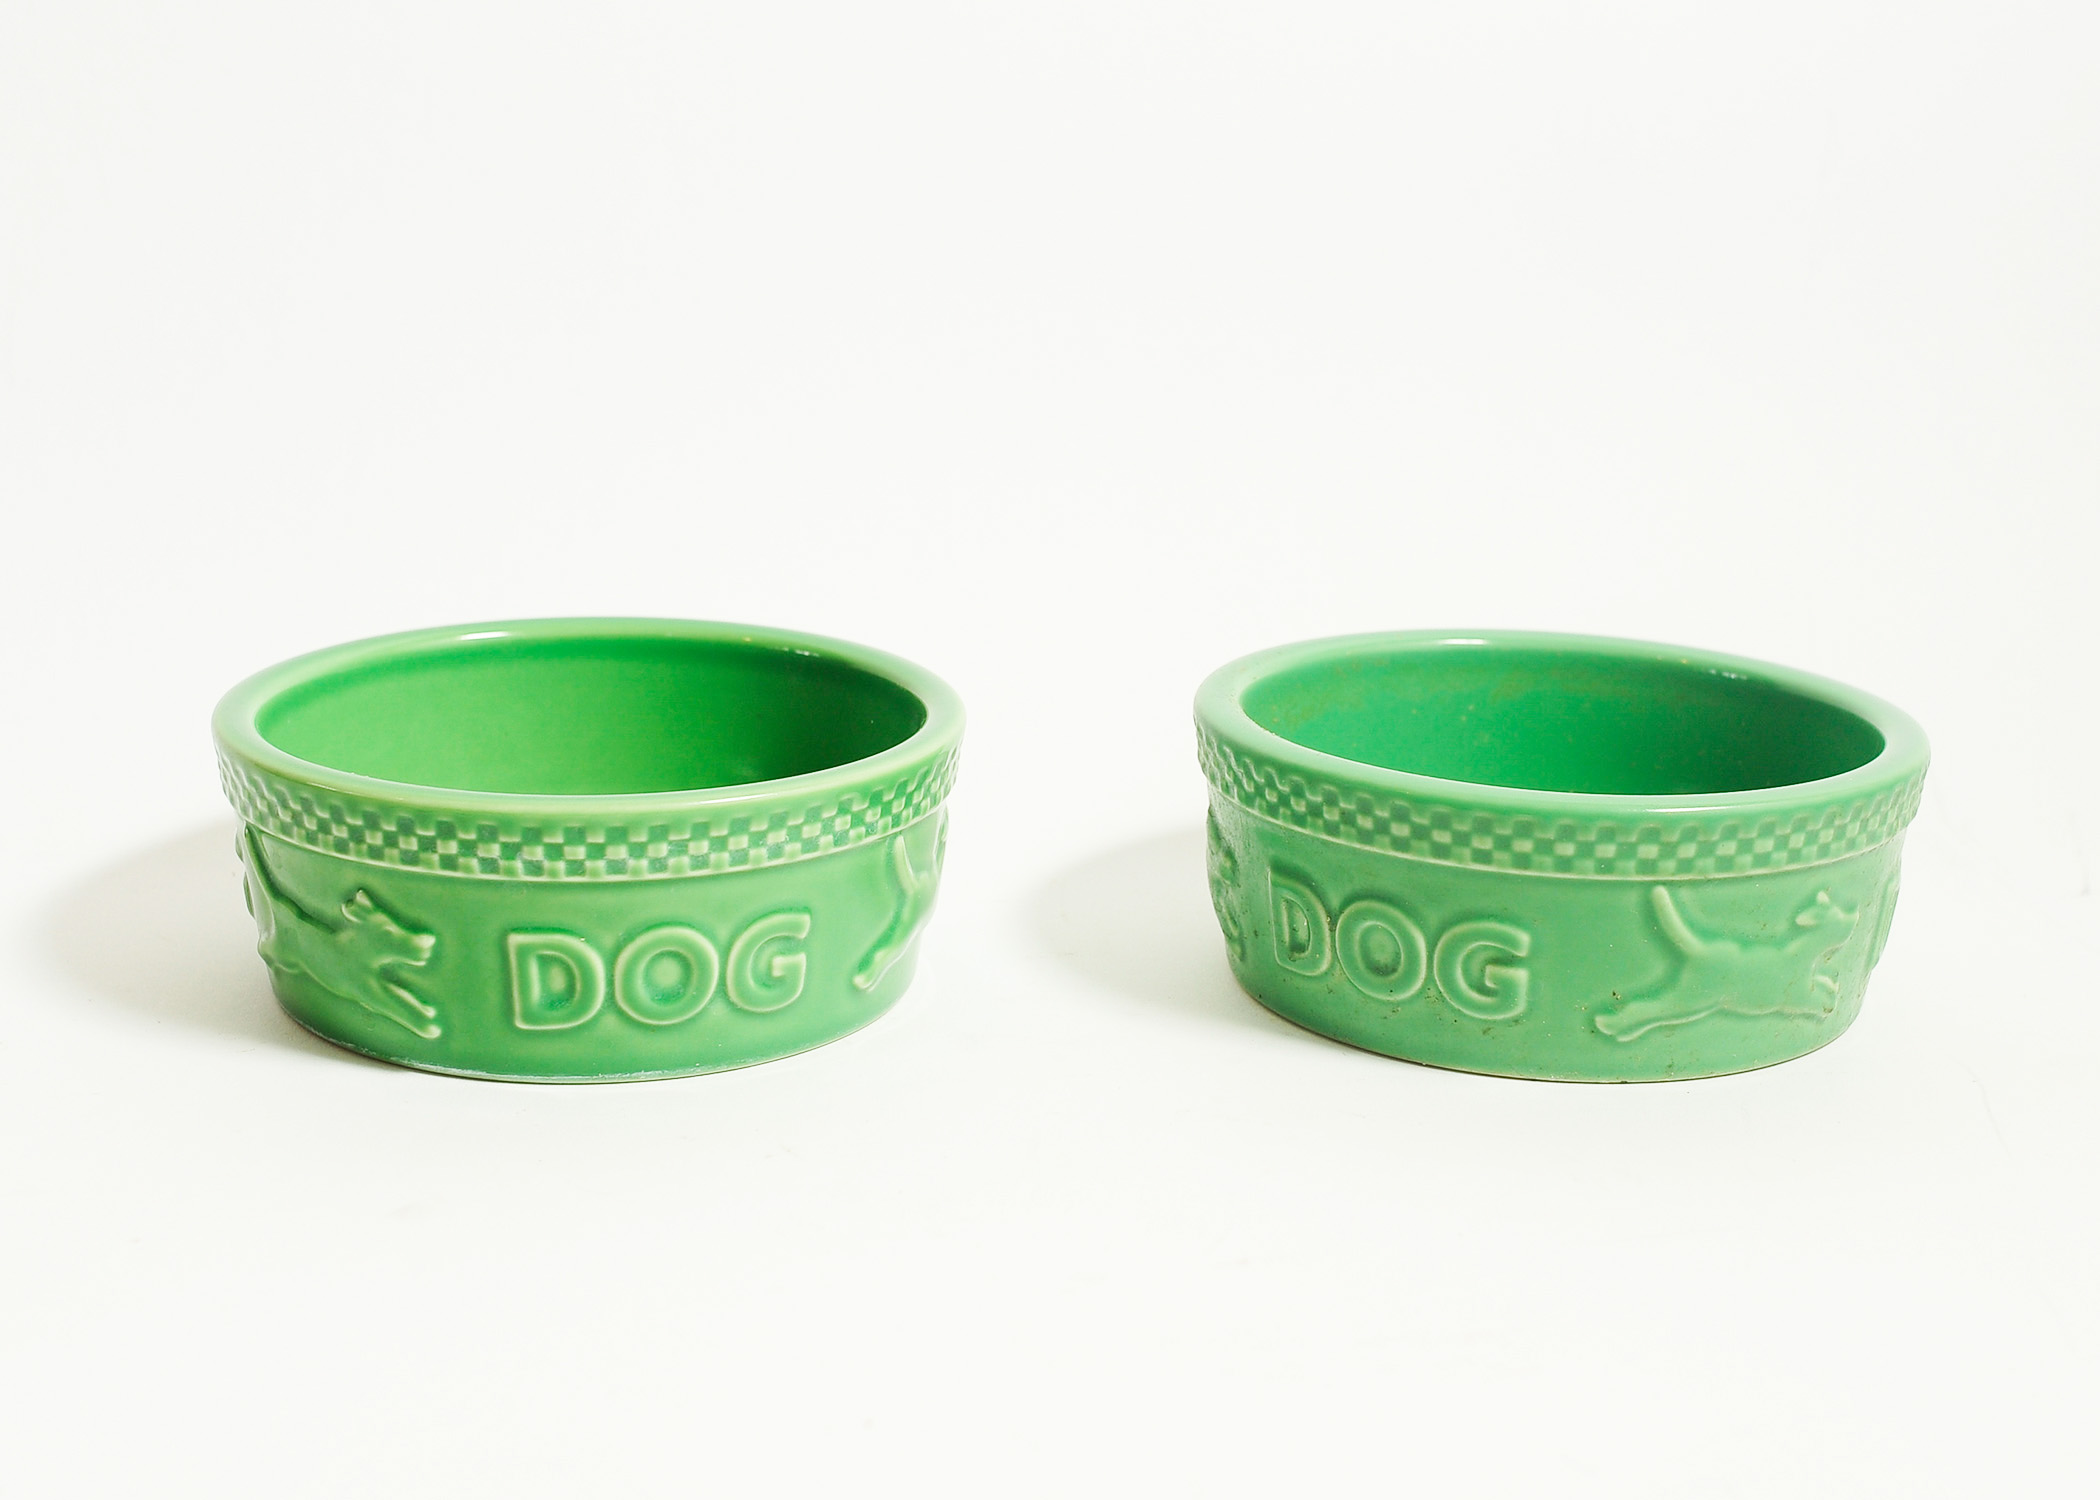 longaberger dog bowl